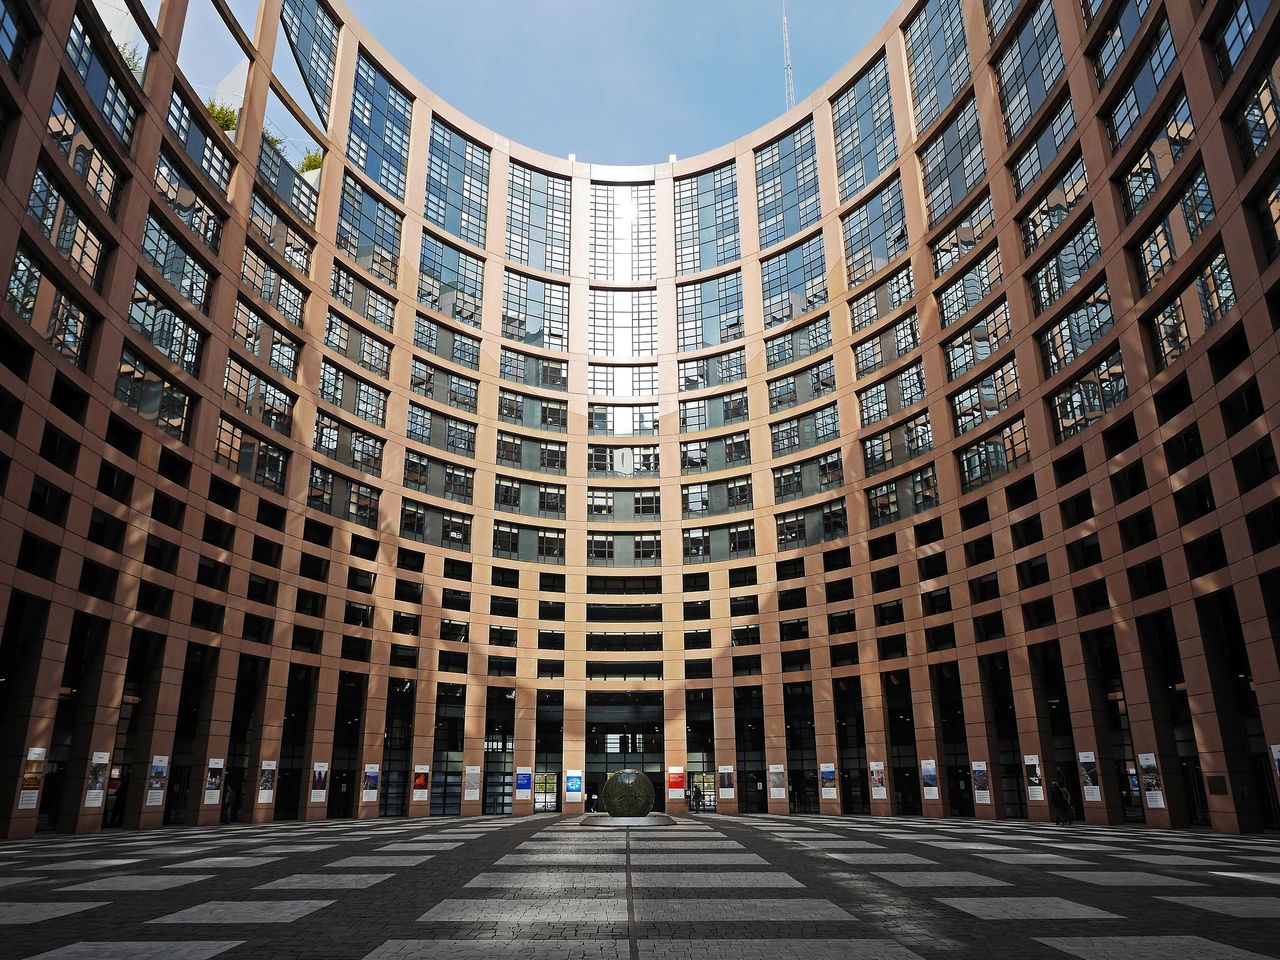 Parlament Europejski przeciw inwigilacji i furtkom w komunikatorach